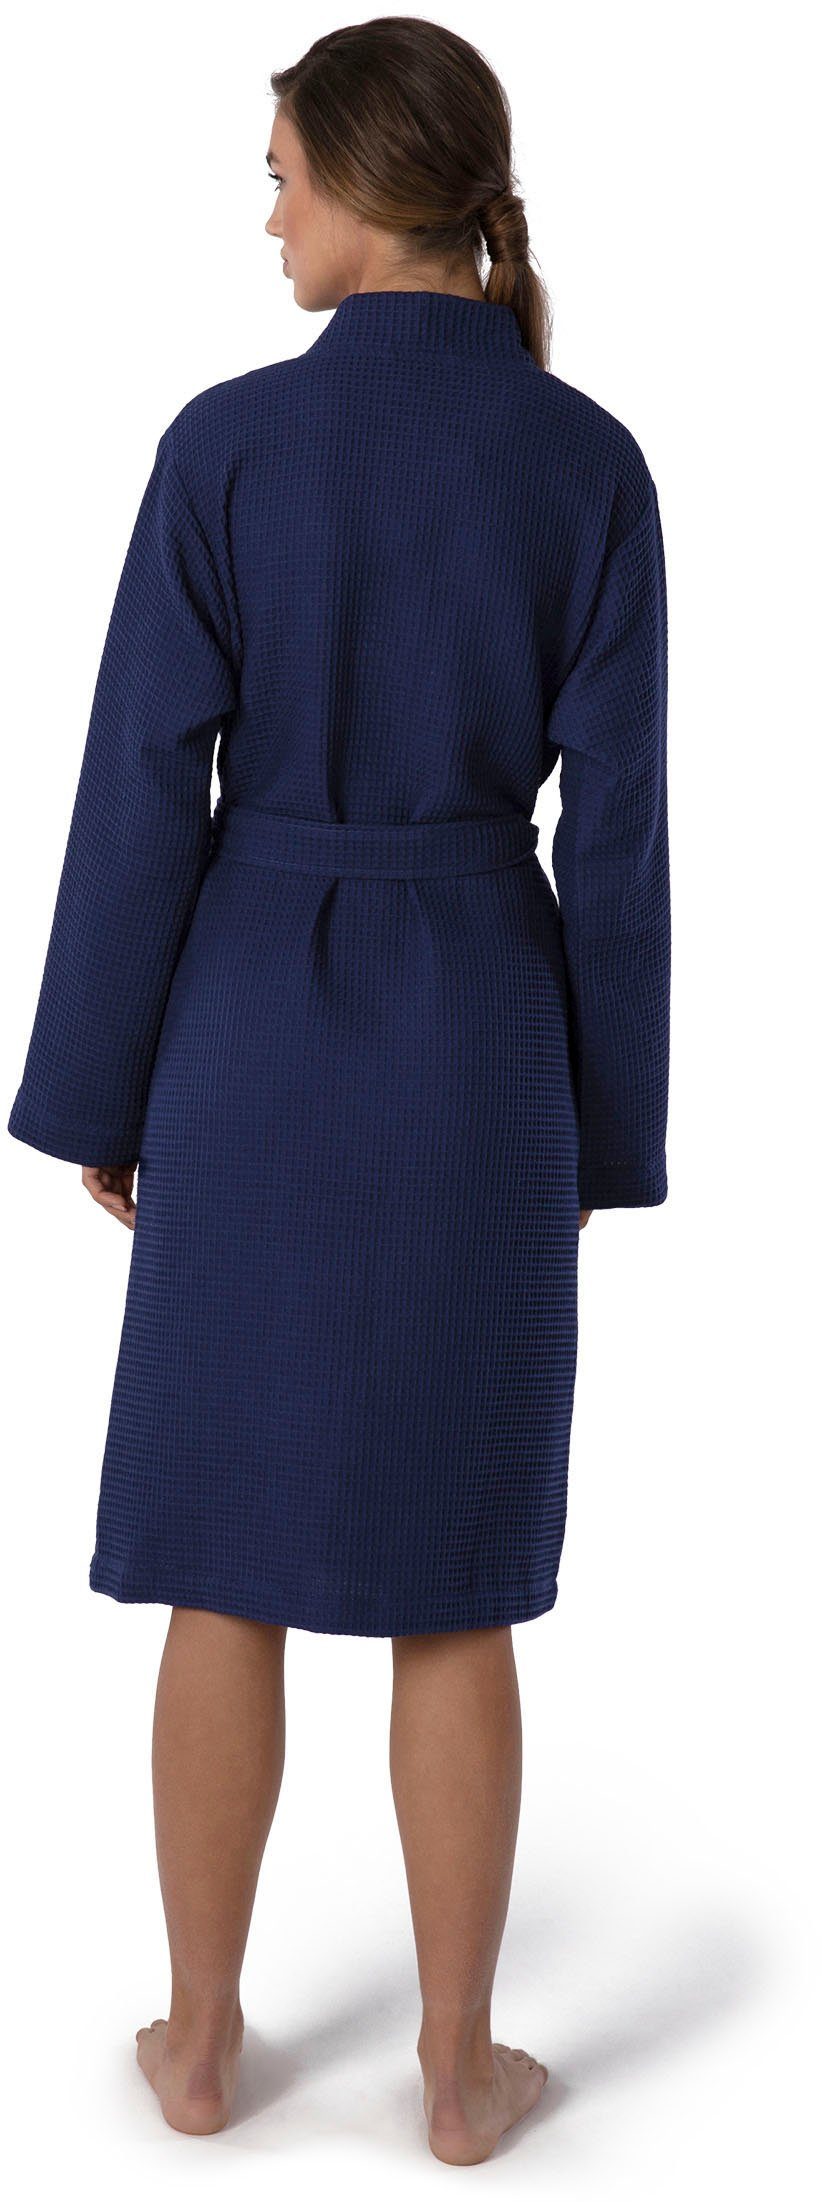 Kimono Piqué, Homewear, Gürtel, Piquée-Oberfläche Möve dunkelblau Kurzform, Kimono-Kragen,